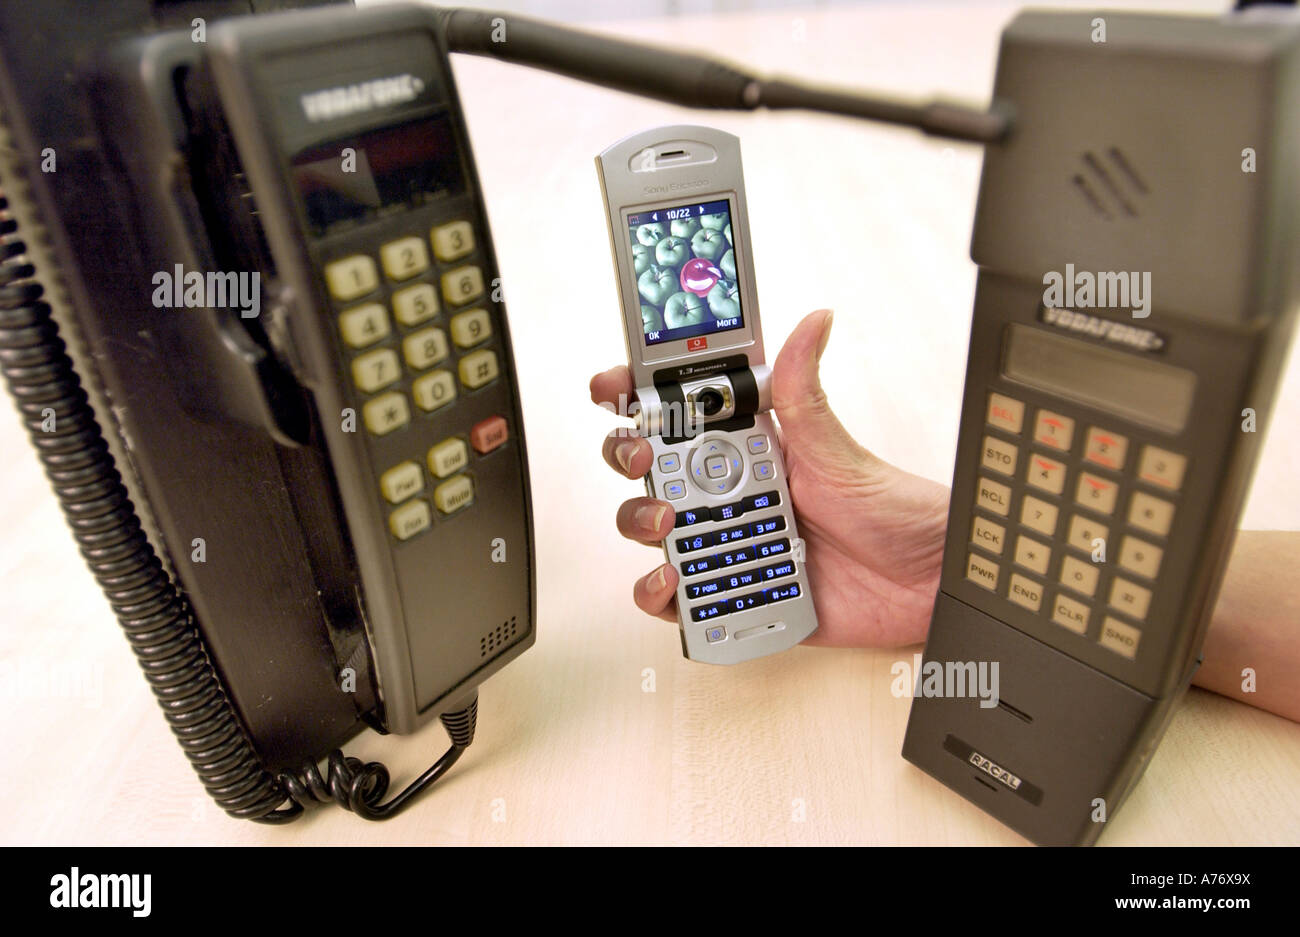 L'histoire des téléphones mobiles affichées avec d'anciens modèles des années 80 et d'un visiophone 3G à partir de 2004. Banque D'Images